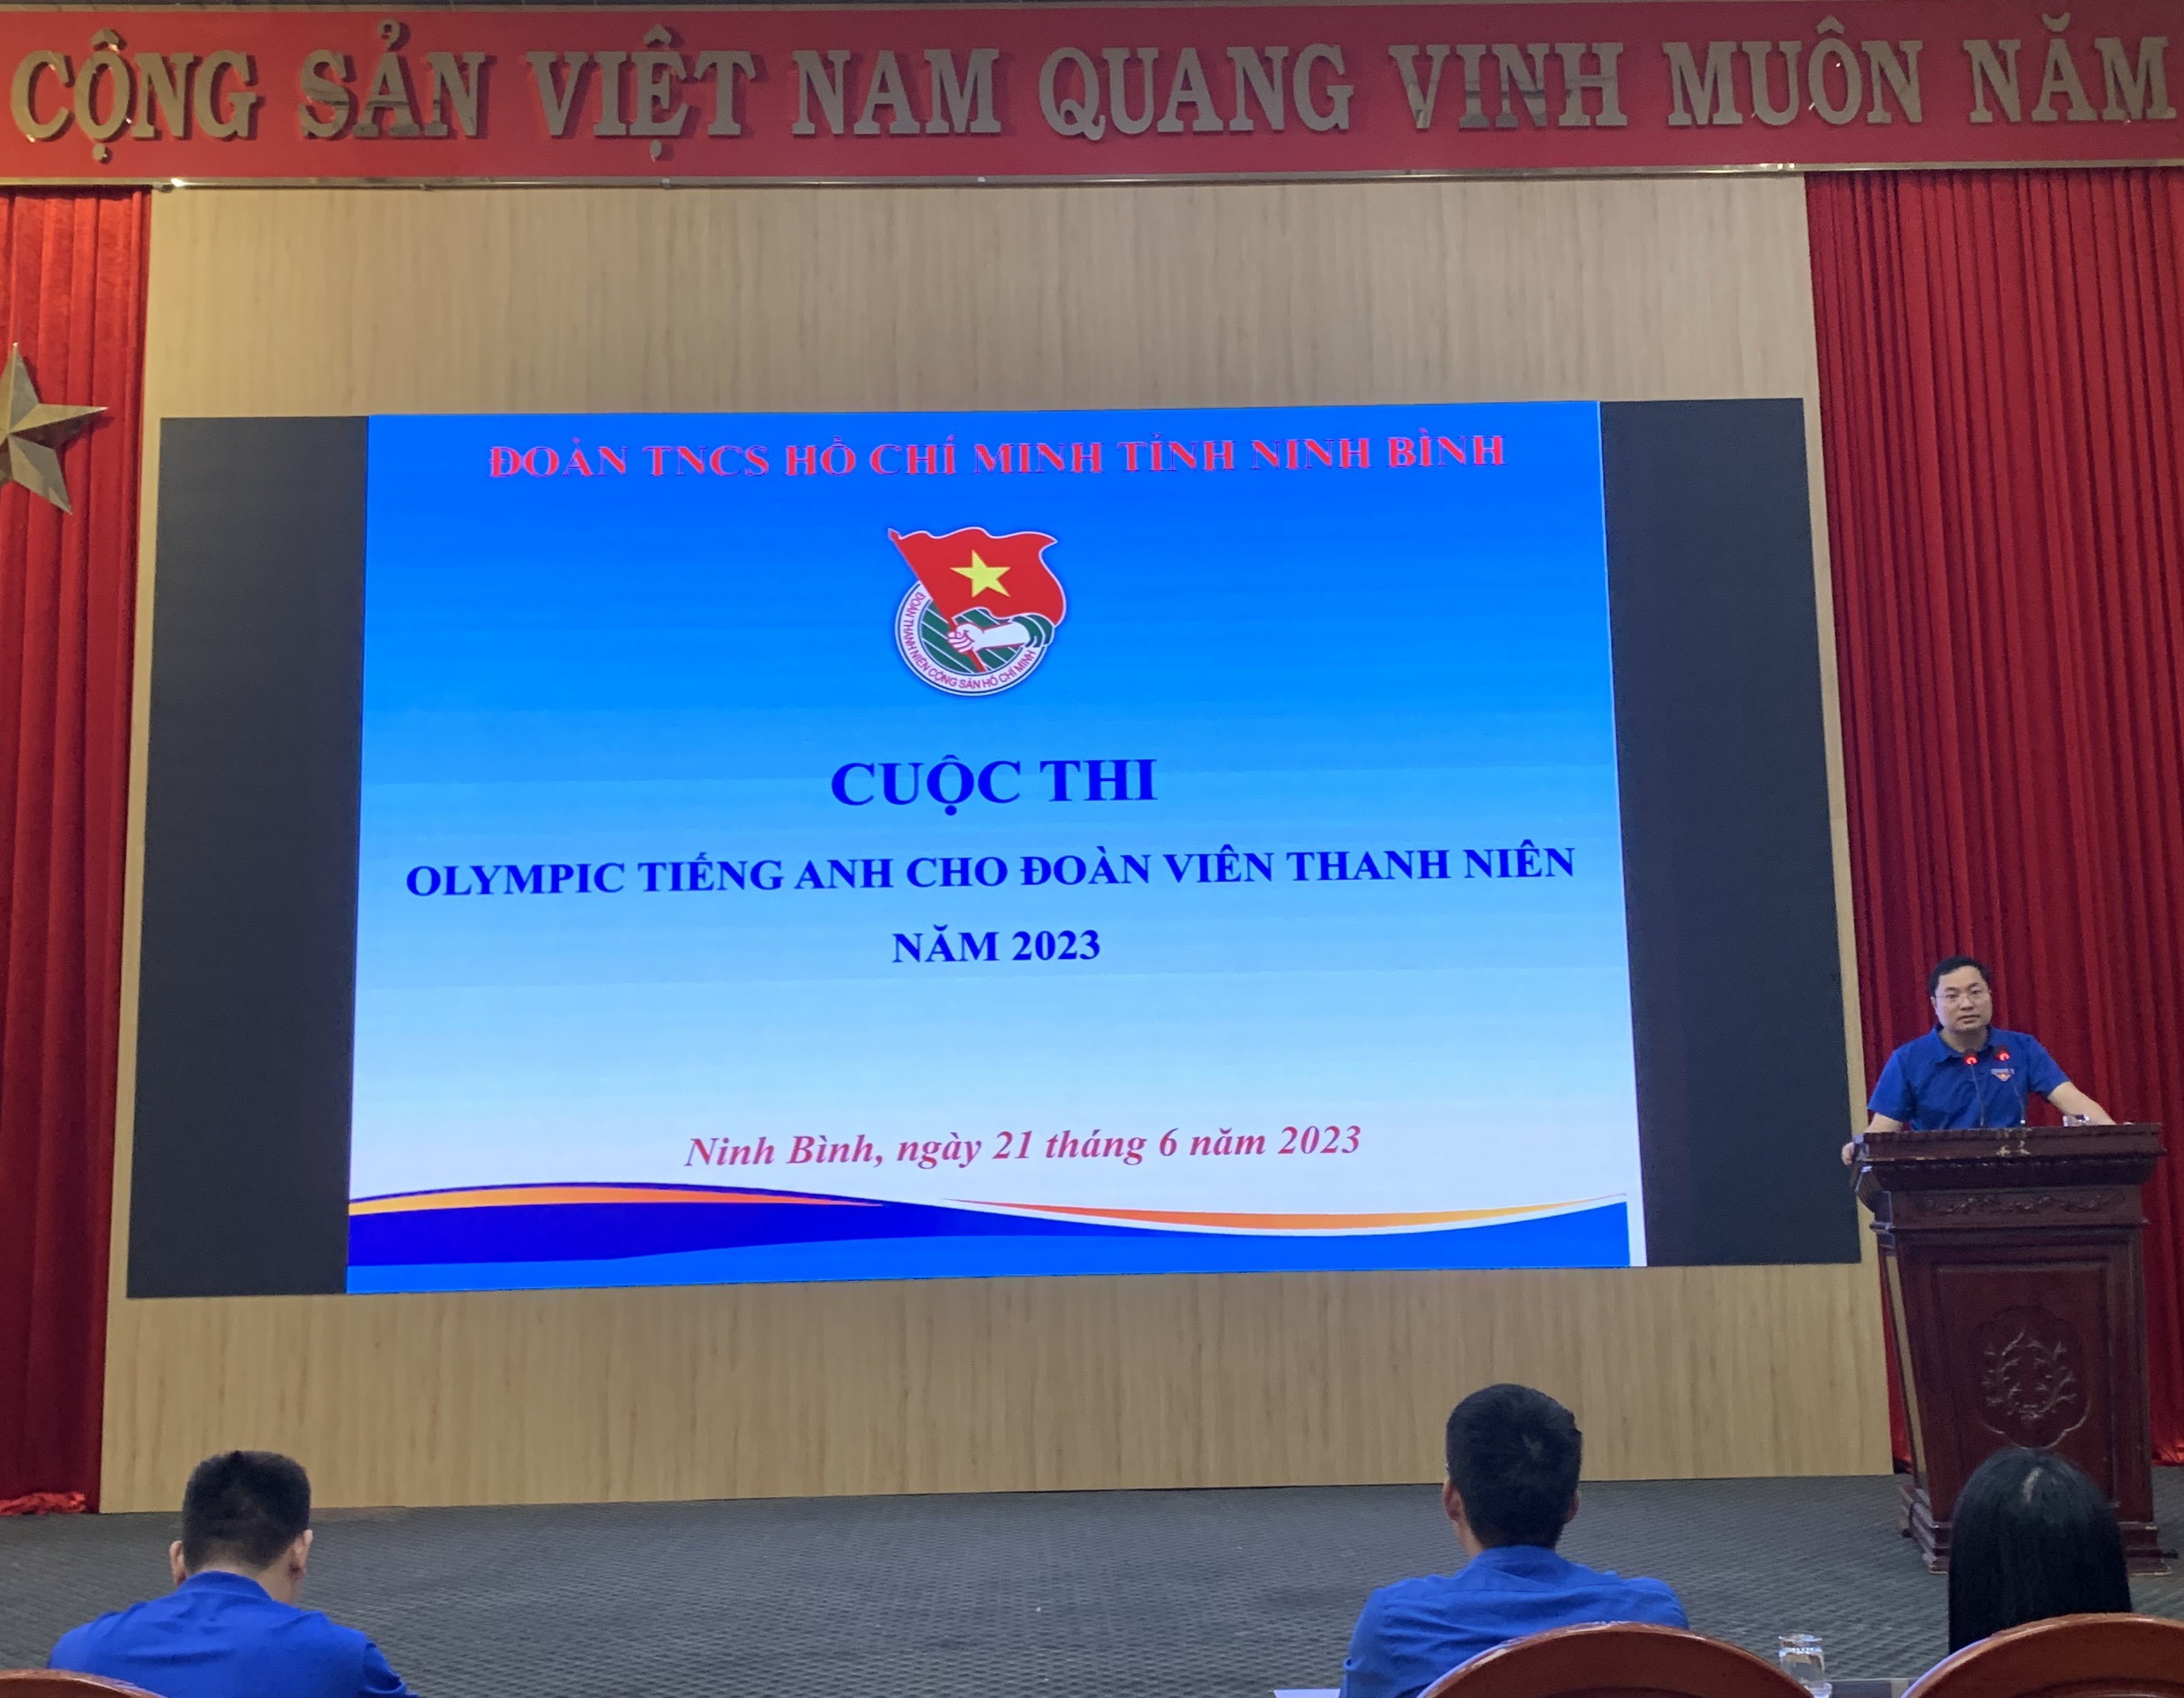 Tỉnh đoàn tổ chức Hội thi Olympic Tiếng Anh cho cán bộ Đoàn, đoàn viên, thanh niên tỉnh Ninh Bình năm 2023